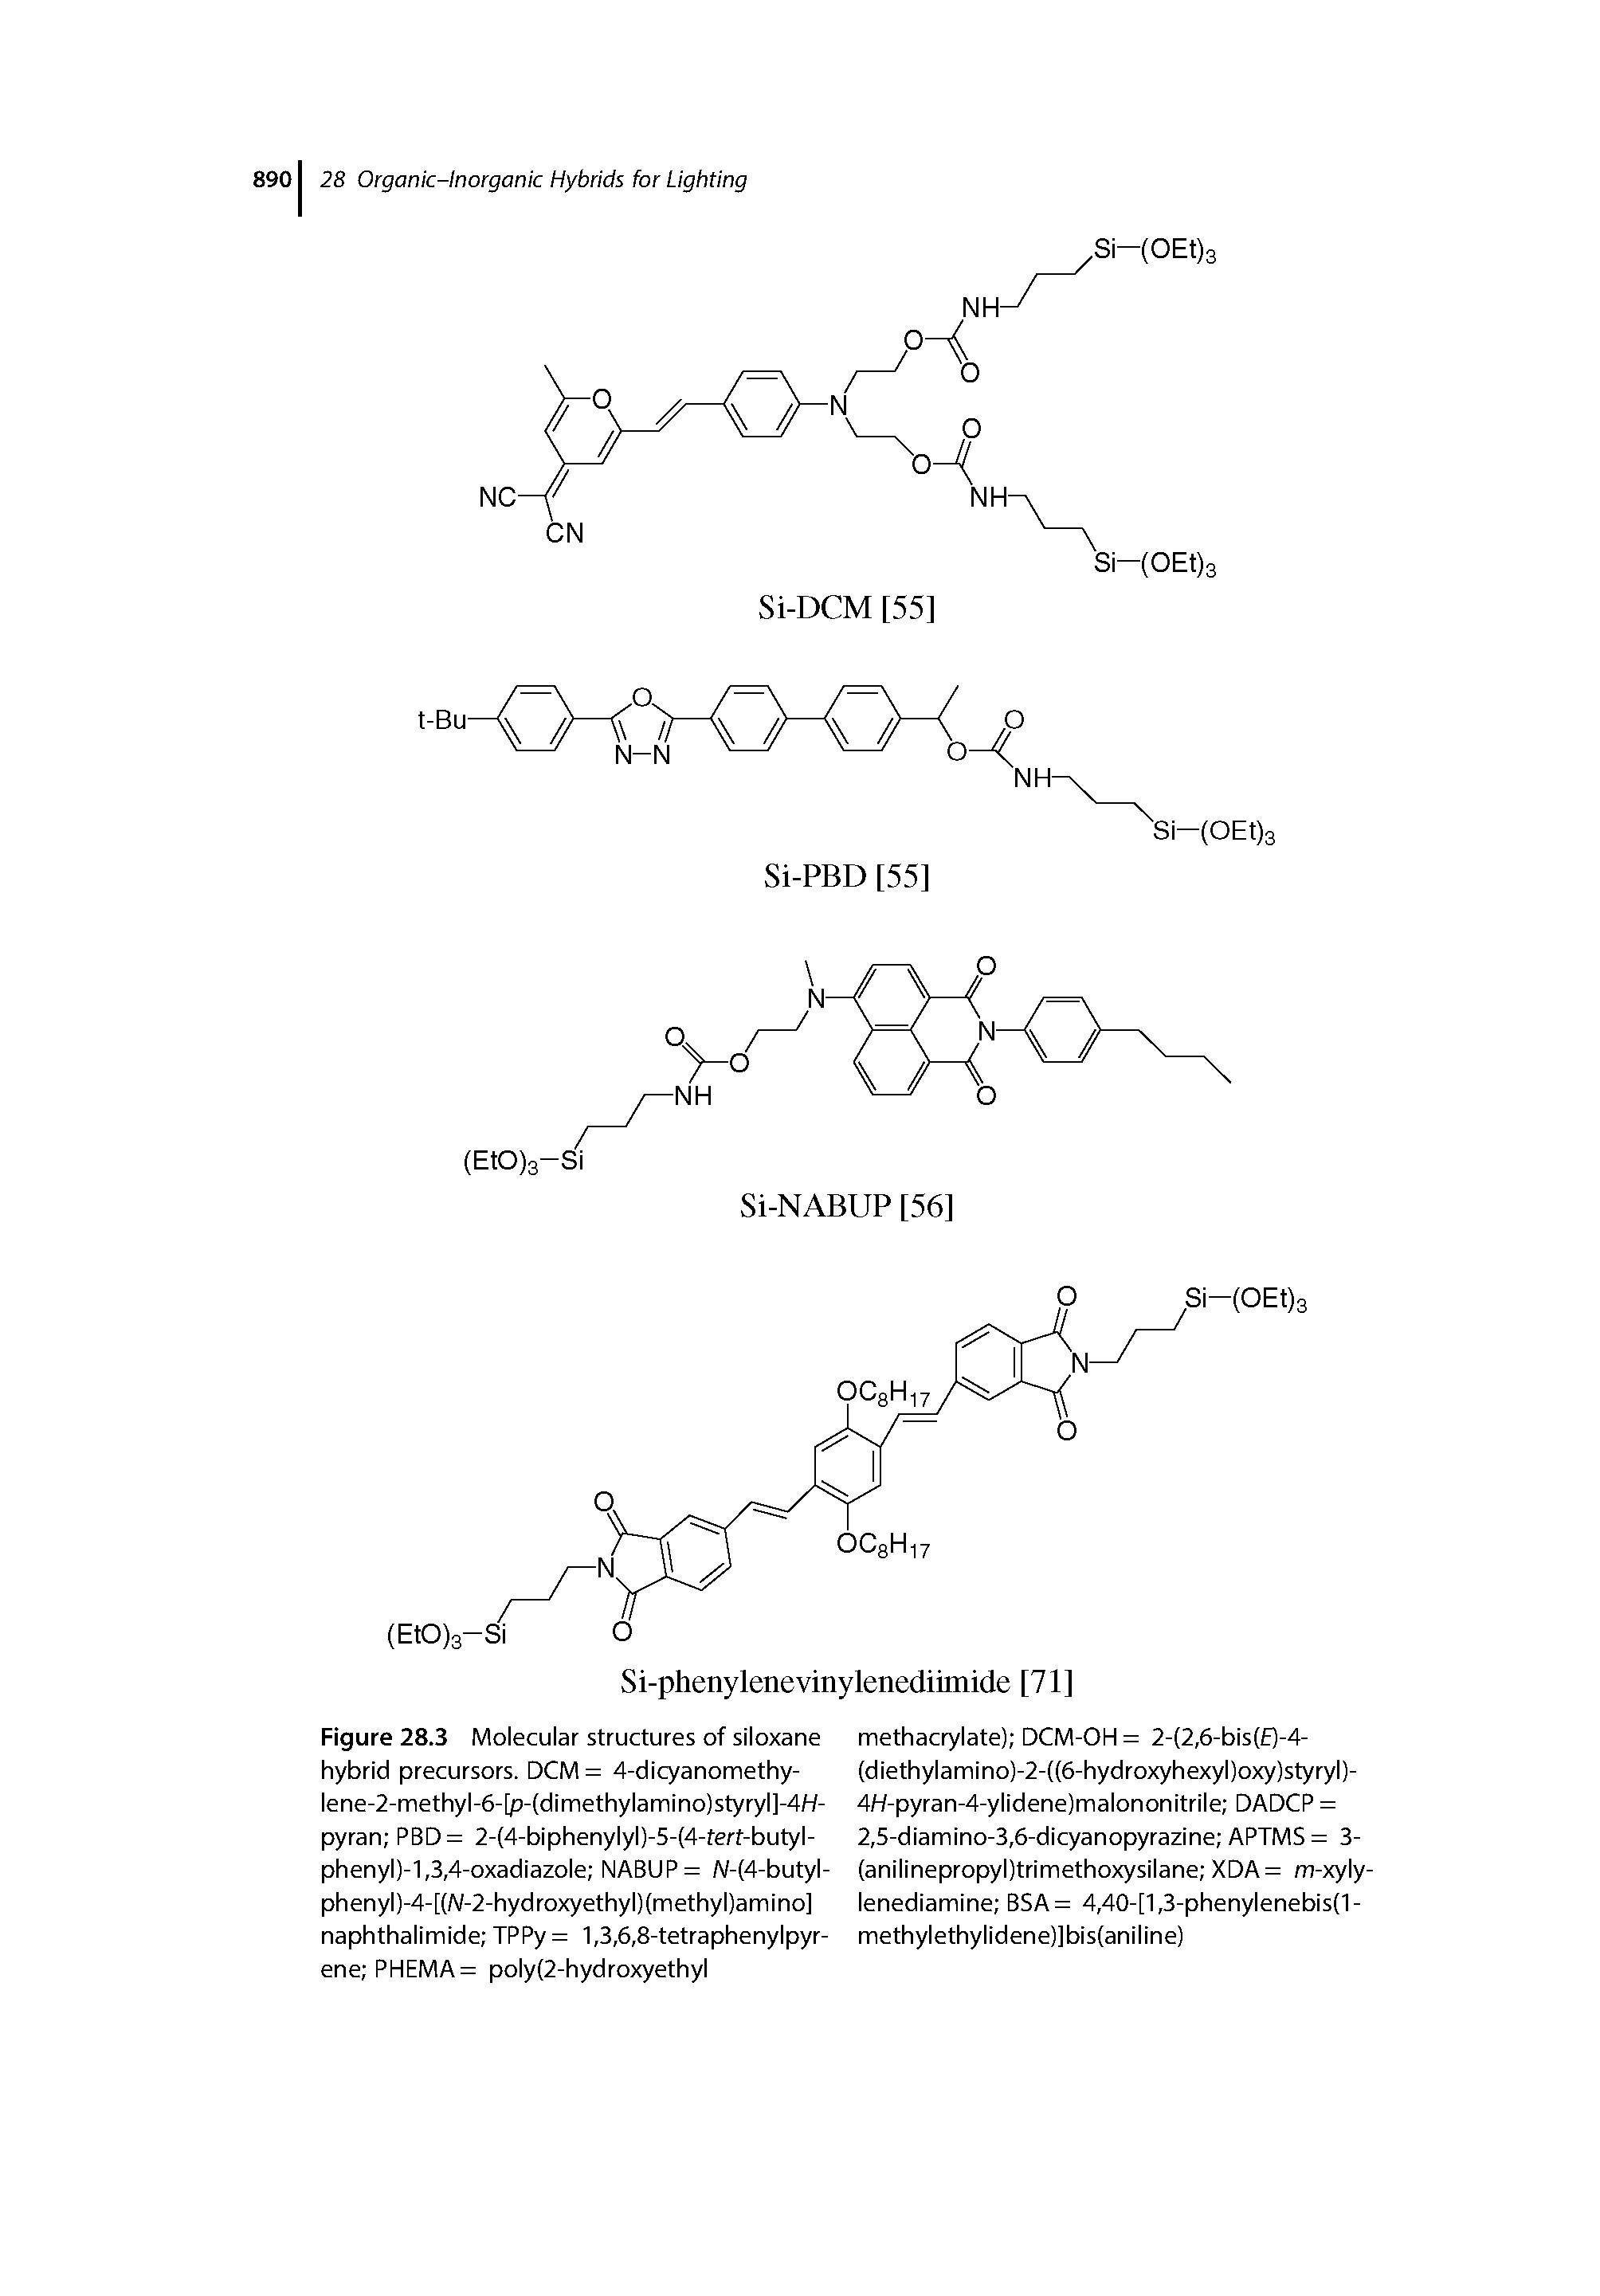 Figure 28.3 Molecular structures of siloxane hybrid precursors. DCM= 4-dicyanomethy-lene-2-methyl-6-[p-(dimethylamino)styryl]-4/-/-pyran PBD= 2-(4-biphenylyl)-5-(4-ferf-butyl-phenyl)-1,3,4-oxadiazole NABUP= A/-(4-butyl-phenyl)-4-[(A/-2-hydroxyethyl)(methyl)amino] naphthalimide TPPy = 1,3,6,8-tetraphenylpyr-ene PHEMA= poly(2-hydroxyethyl...